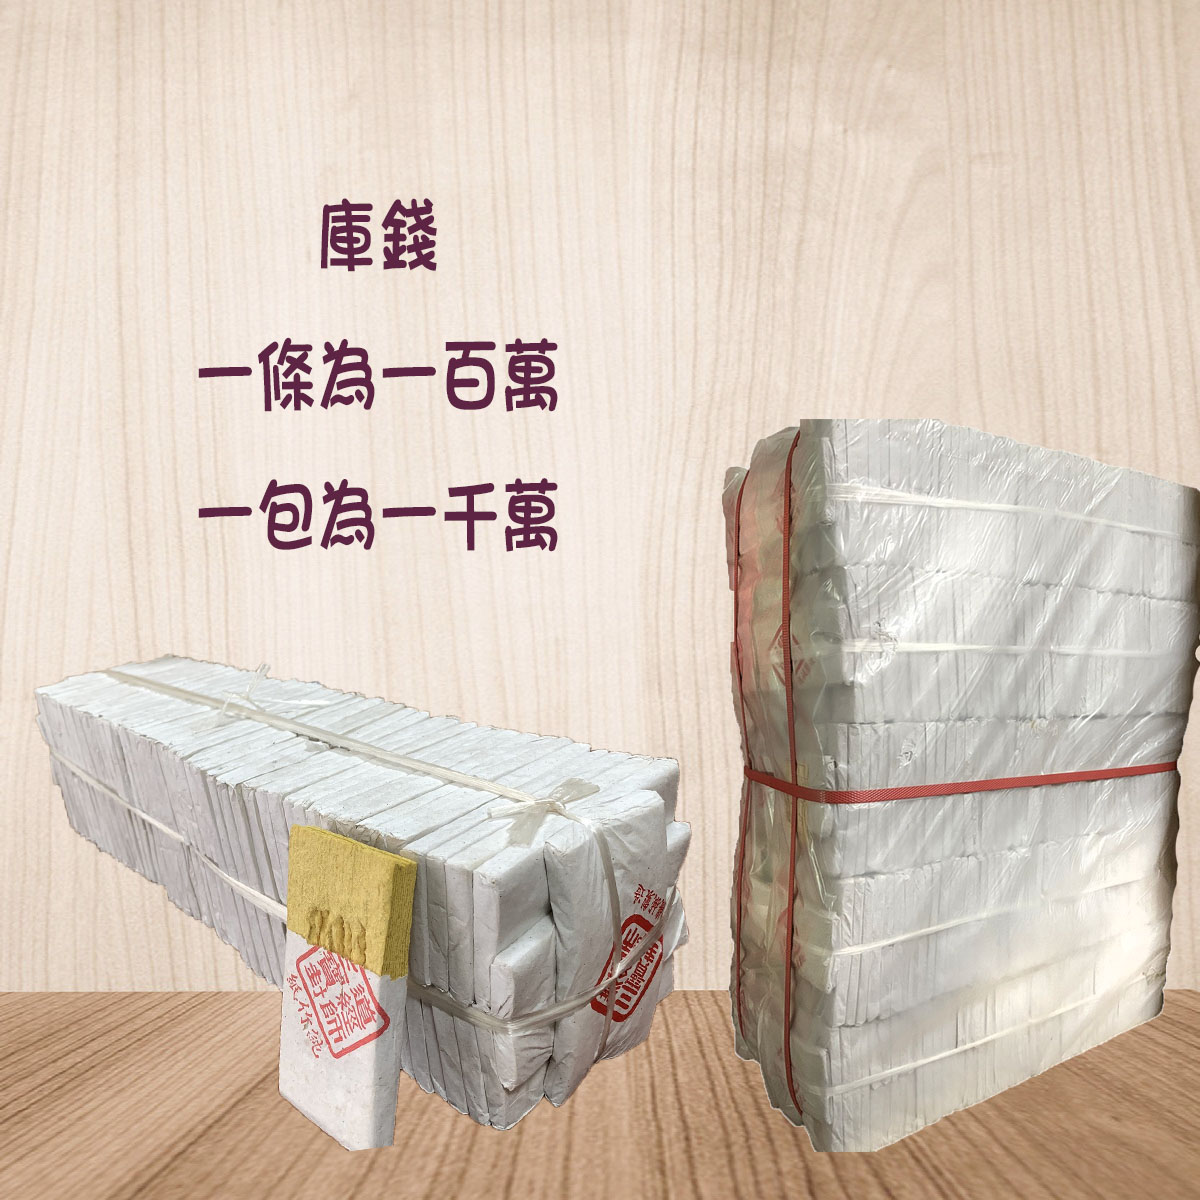 小版進口製純竹紙庫錢(一千萬)